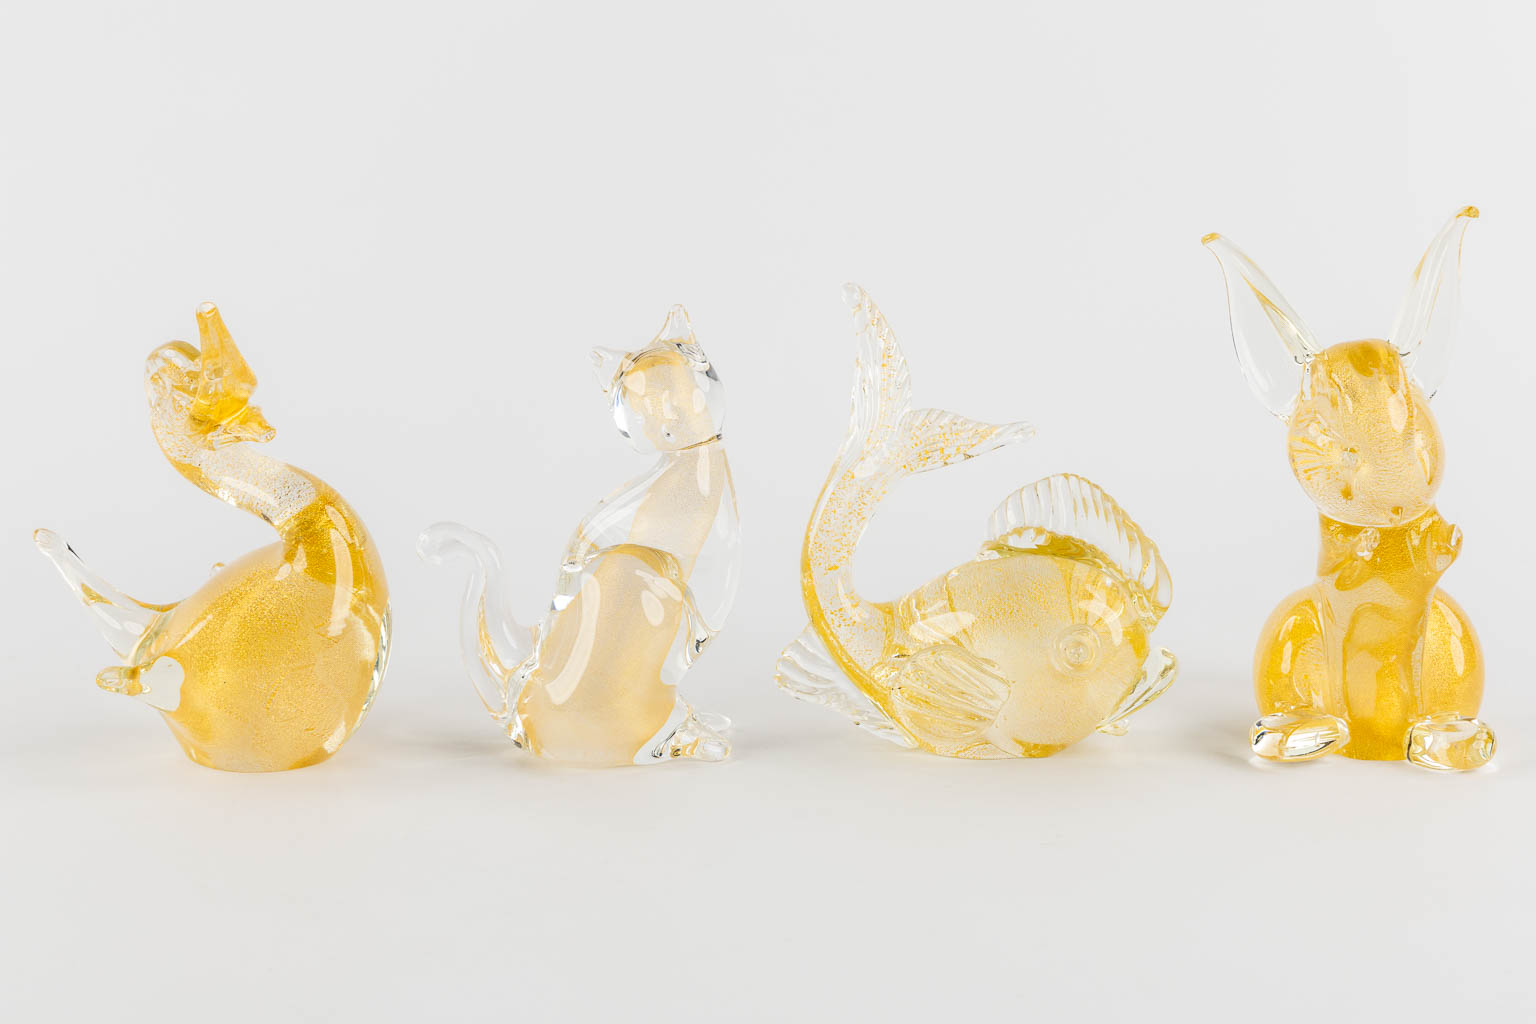 Val Saint Lambert and Murano, 9 glass figurines of animals. (H:19 cm)